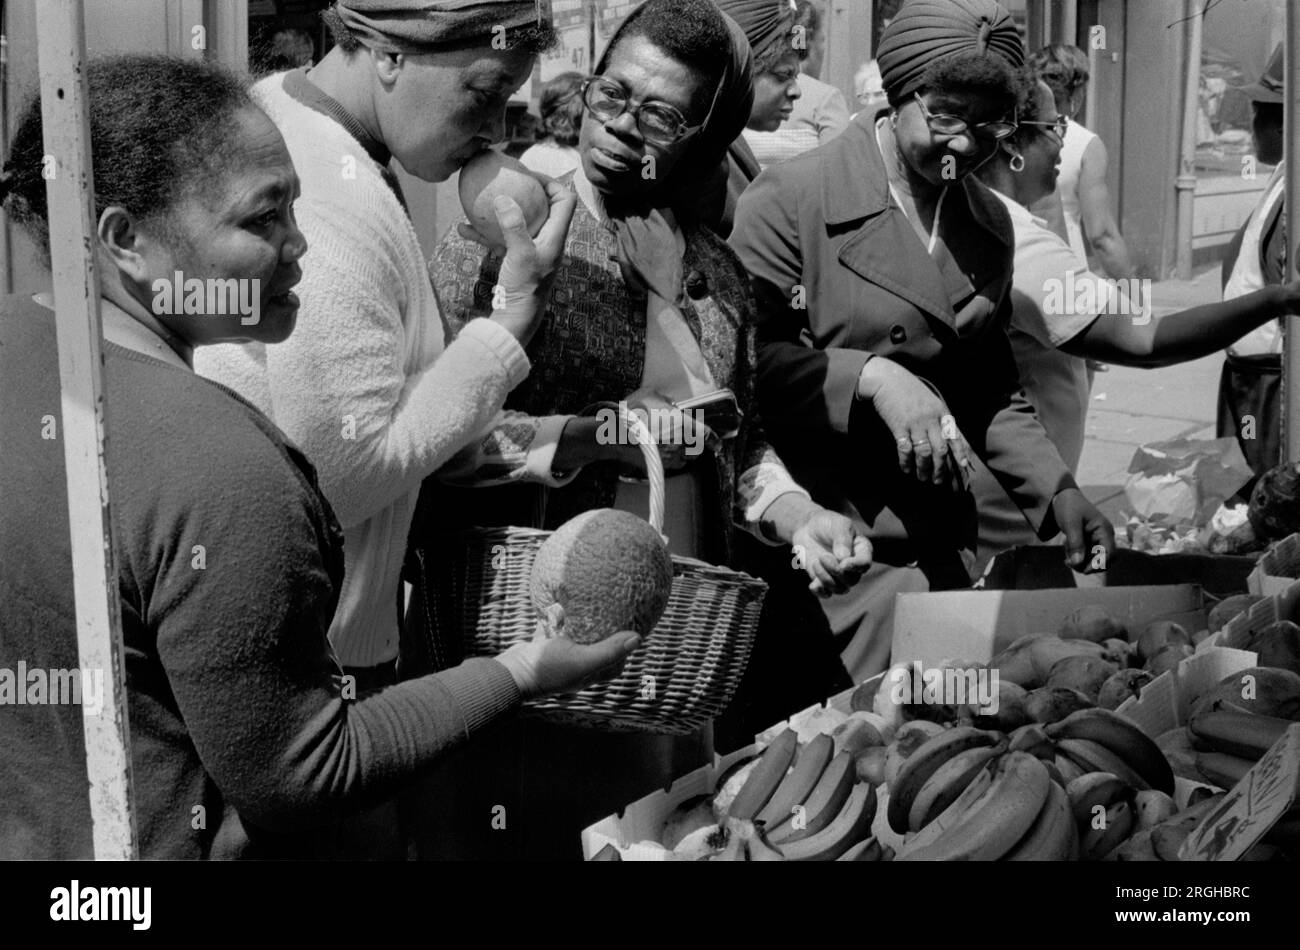 Royaume-Uni multiethnique des années 1970. Portobello Road Notting Hill Londres marché du samedi. Groupe de femmes britanniques noires achetant des fruits, sentant pour voir si mûr. 1975, HOMER SYKES Banque D'Images